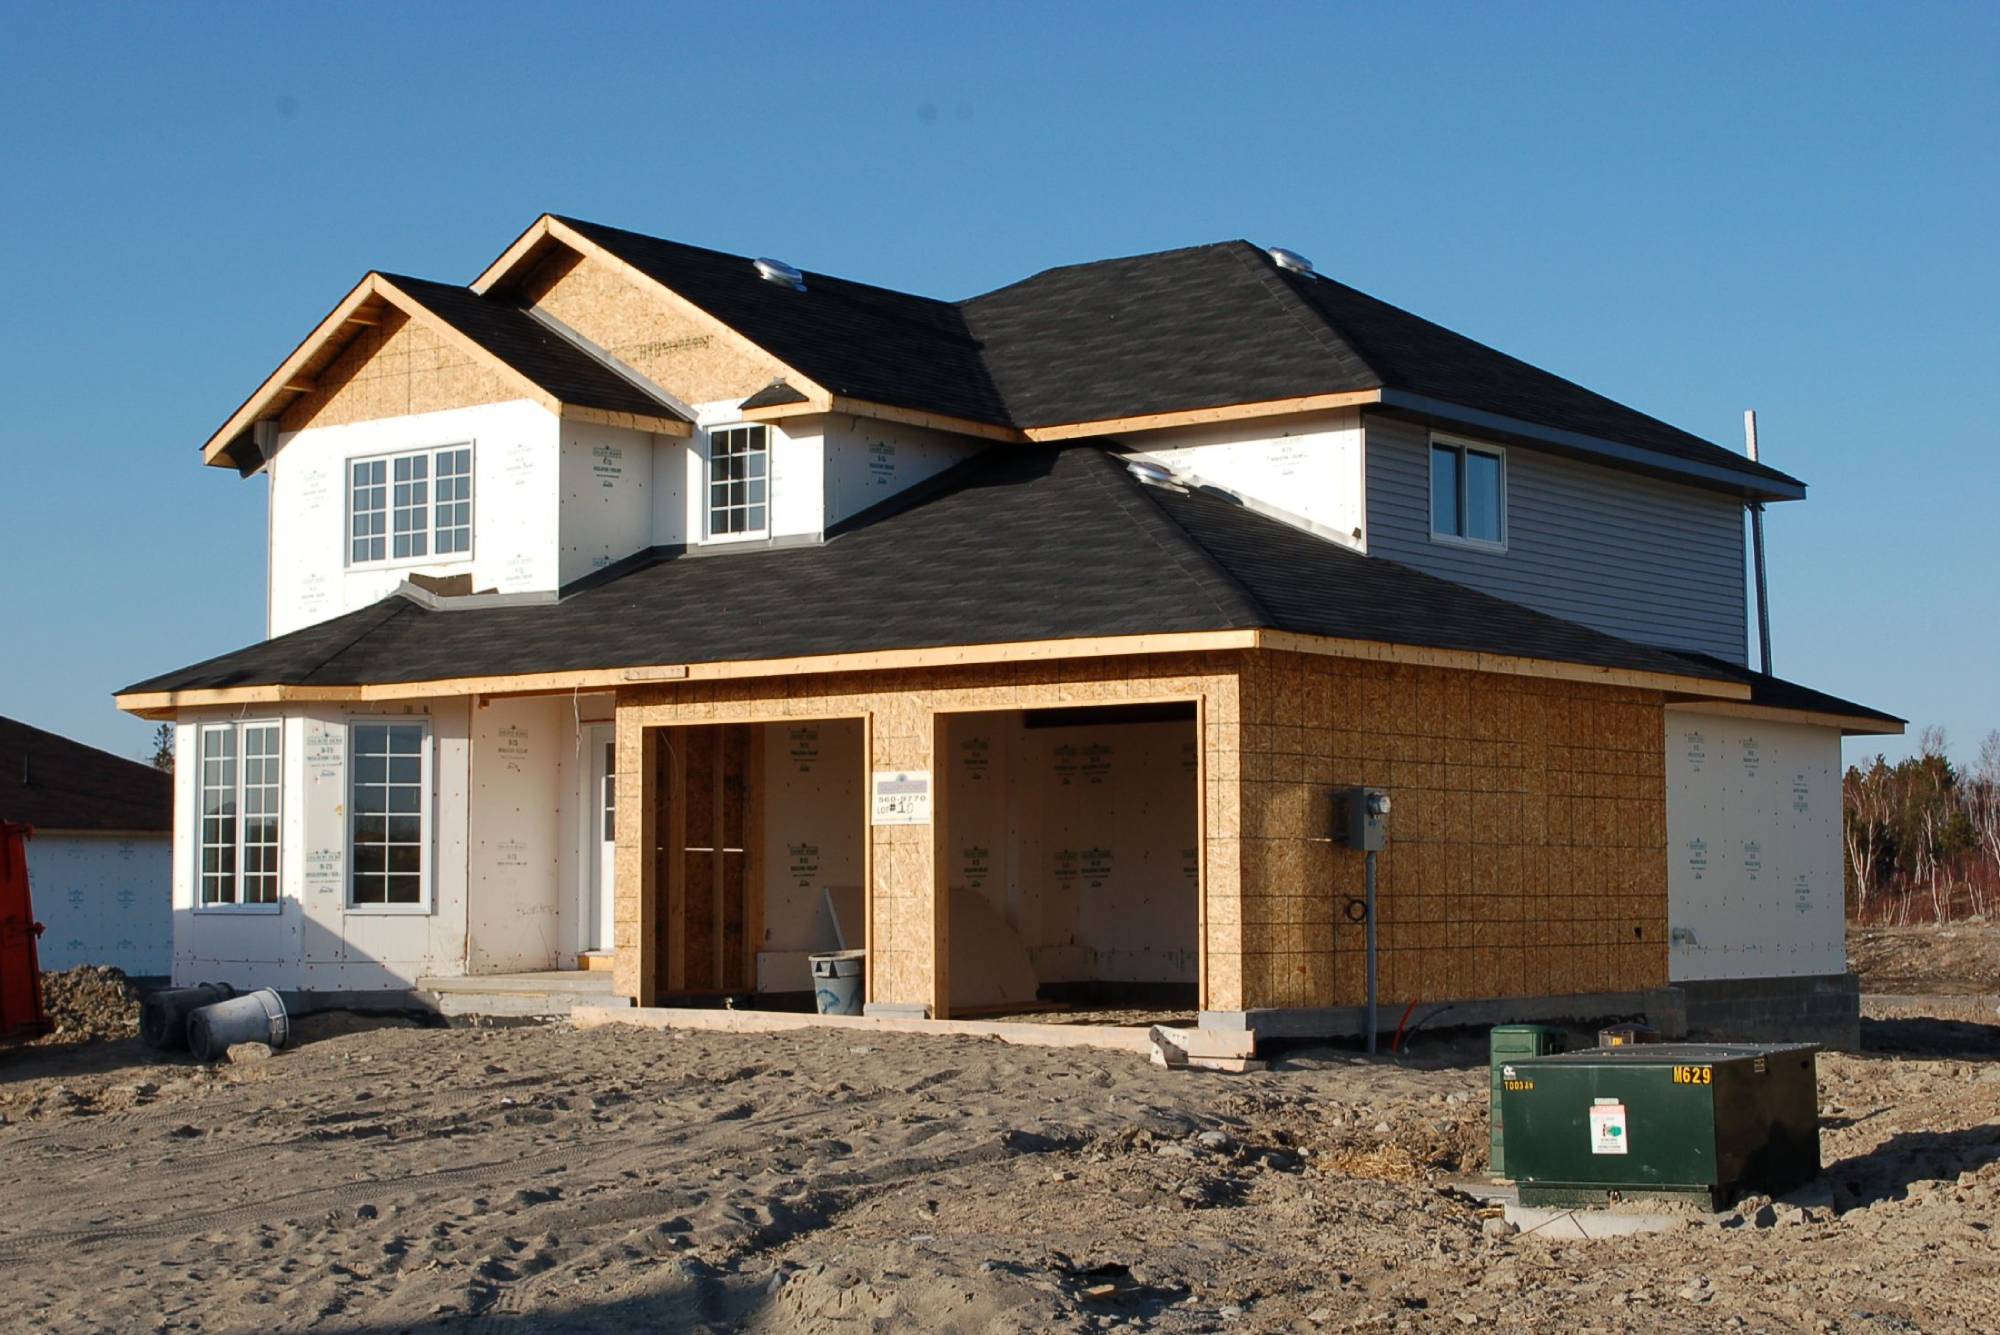 New housing legislation welcomed by Ontario builders